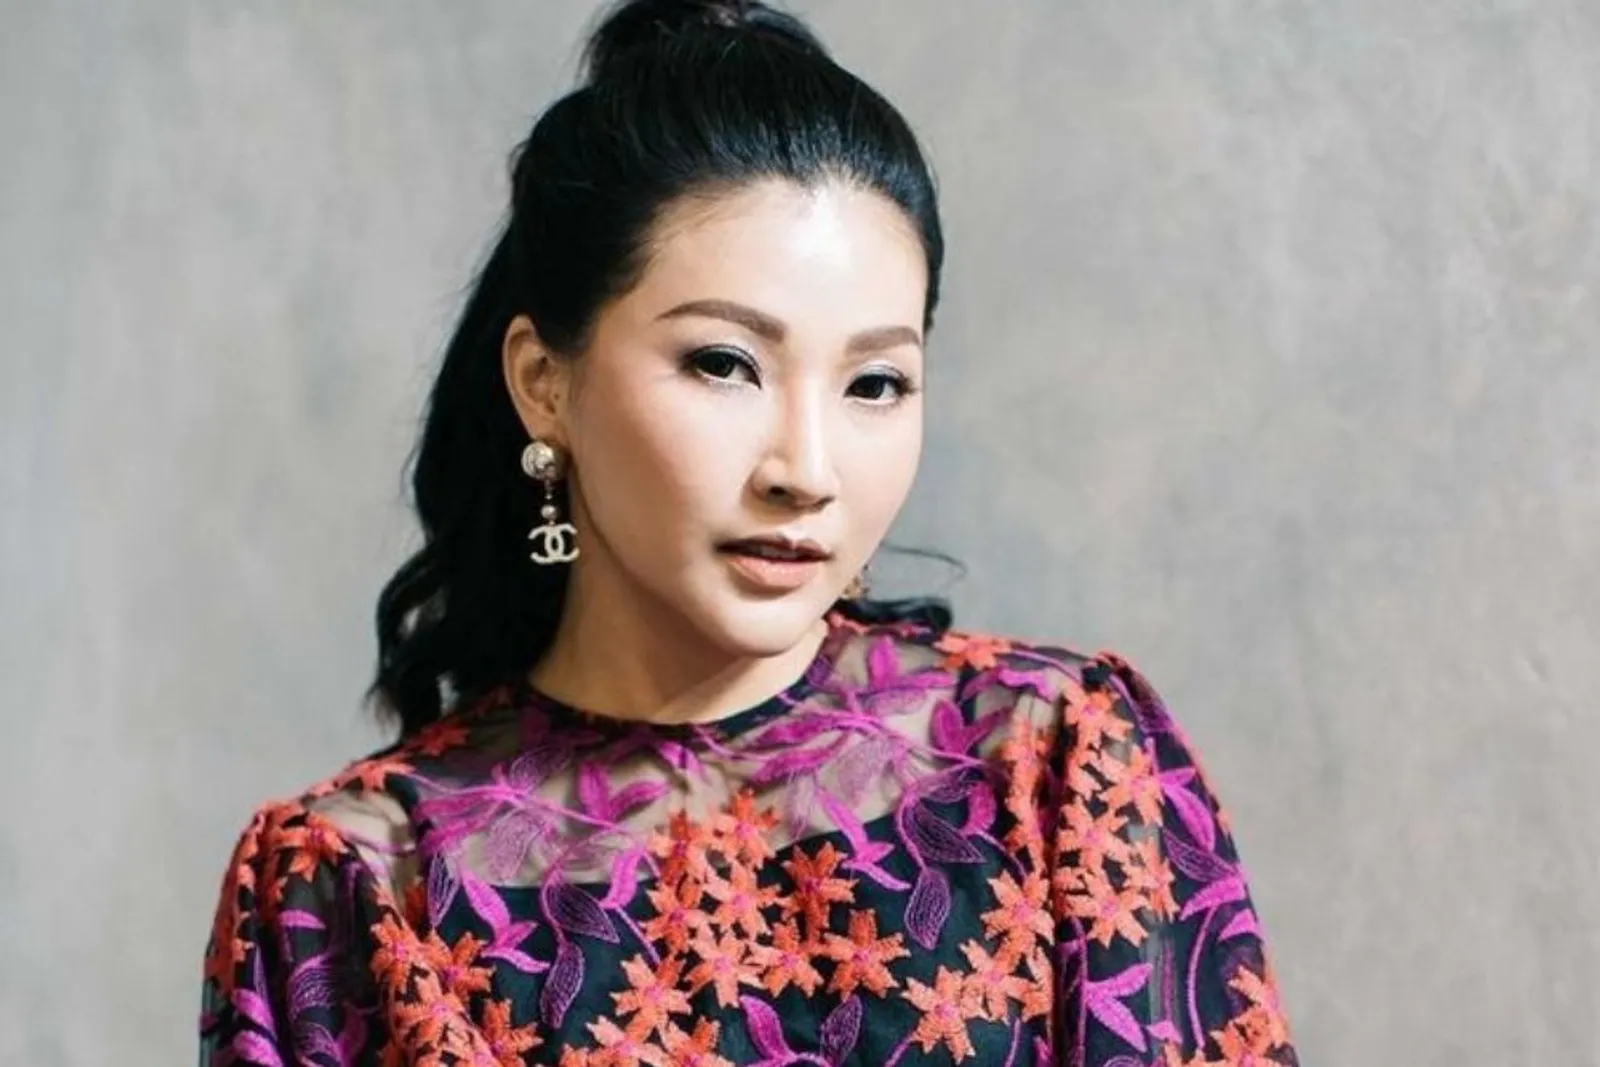 Berdarah Tionghoa, Contek Inspirasi Makeup dari 7 Seleb Tanah Air Ini